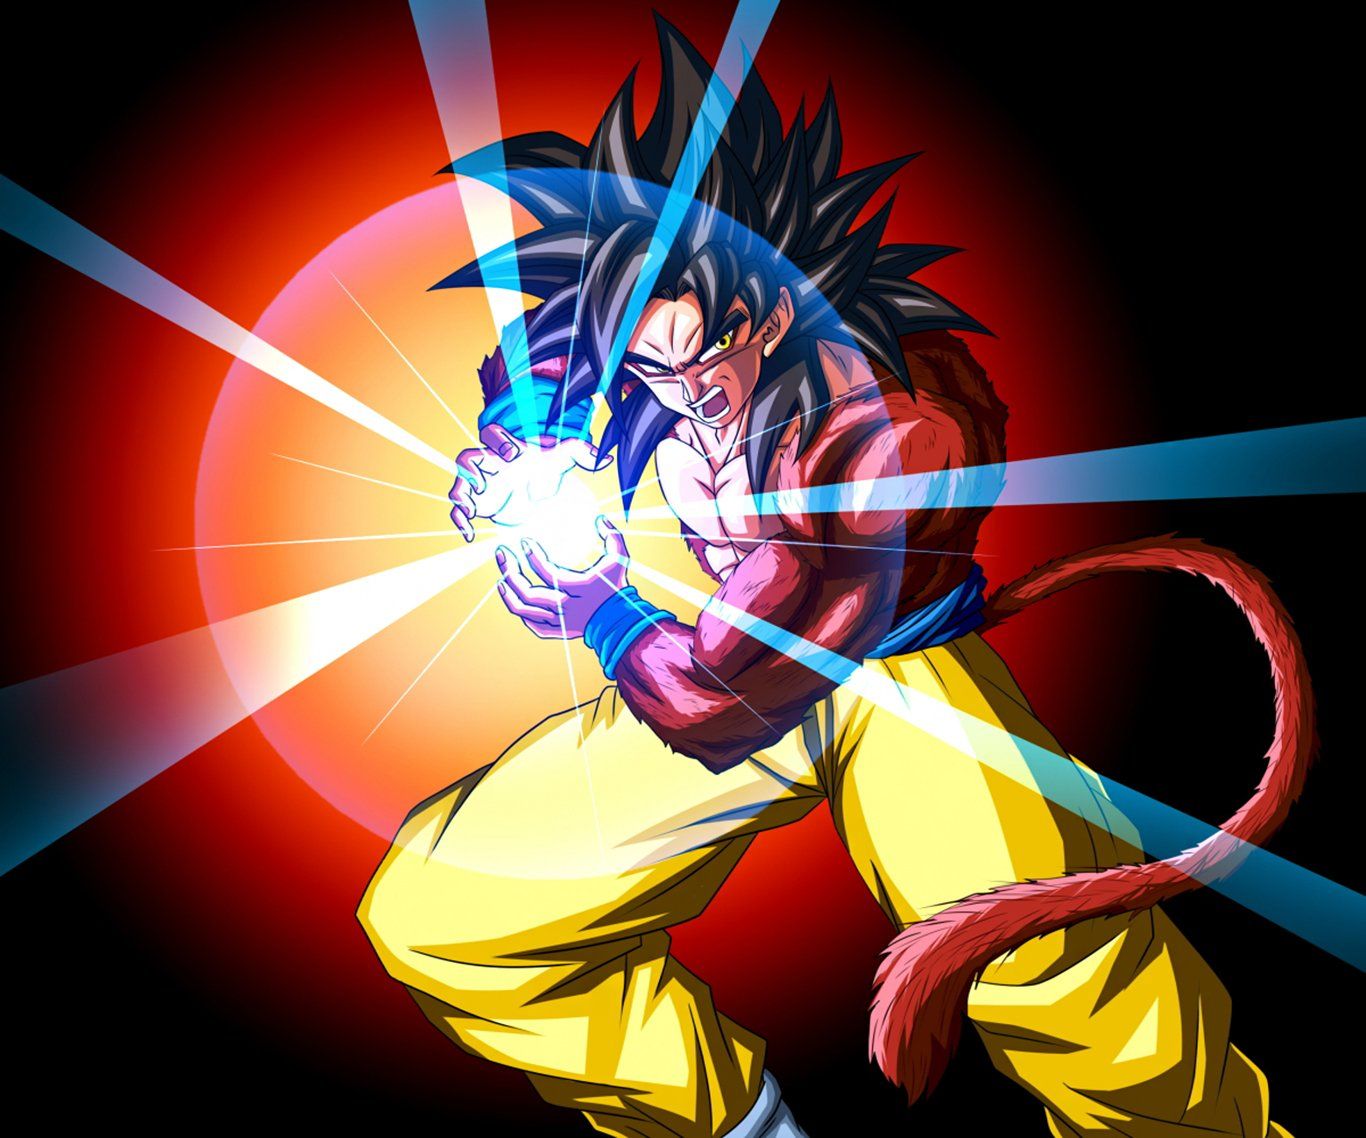 1093 Fondos de pantalla de Goku HD | Imágenes de fondo